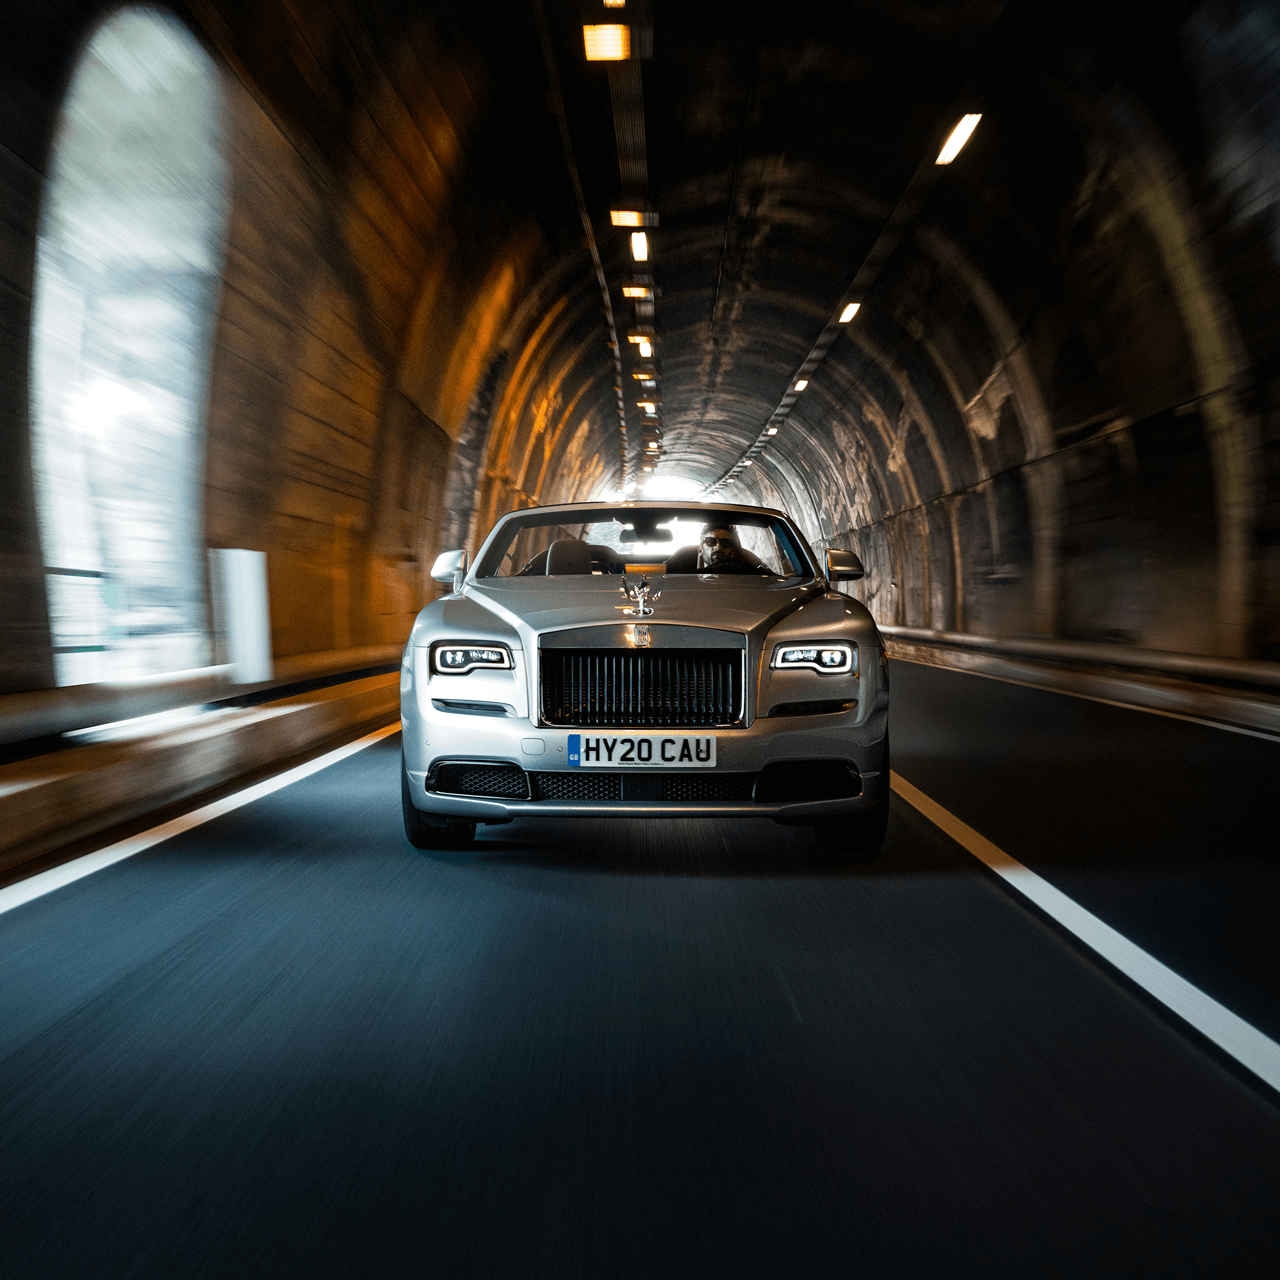 A Rolls Royce travels through a tunnel